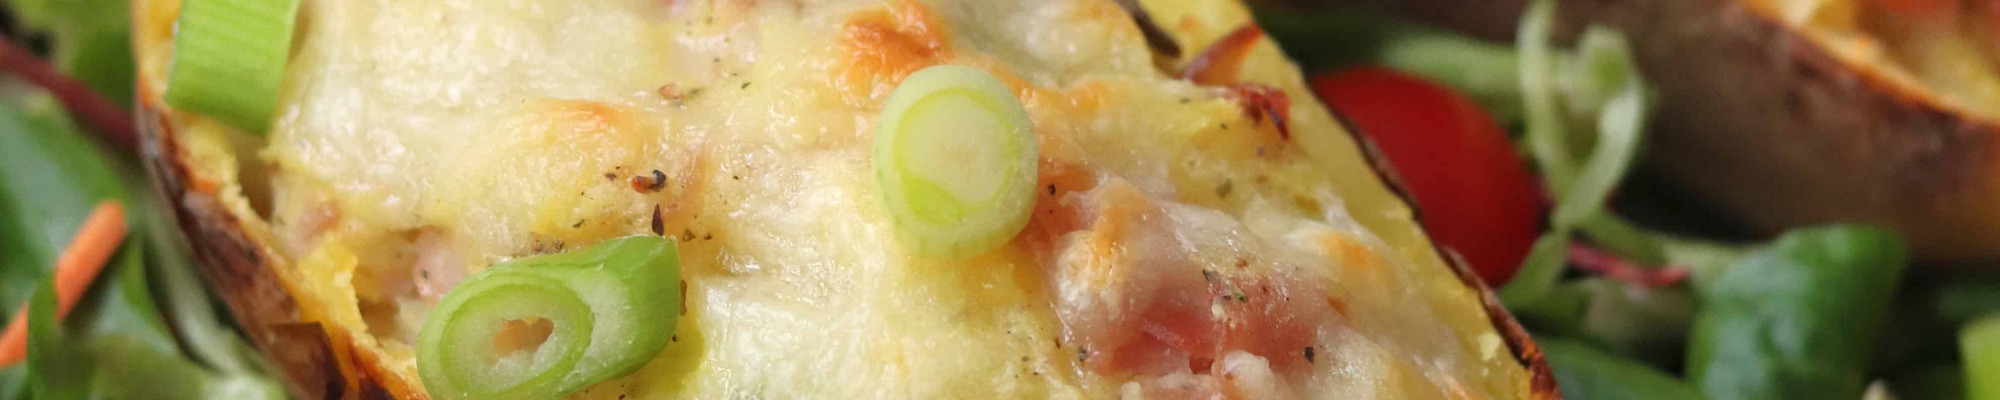 Plnené zemiaky so šunkou a syrom ťa očaria vizuálne aj chuťovo (Recept)